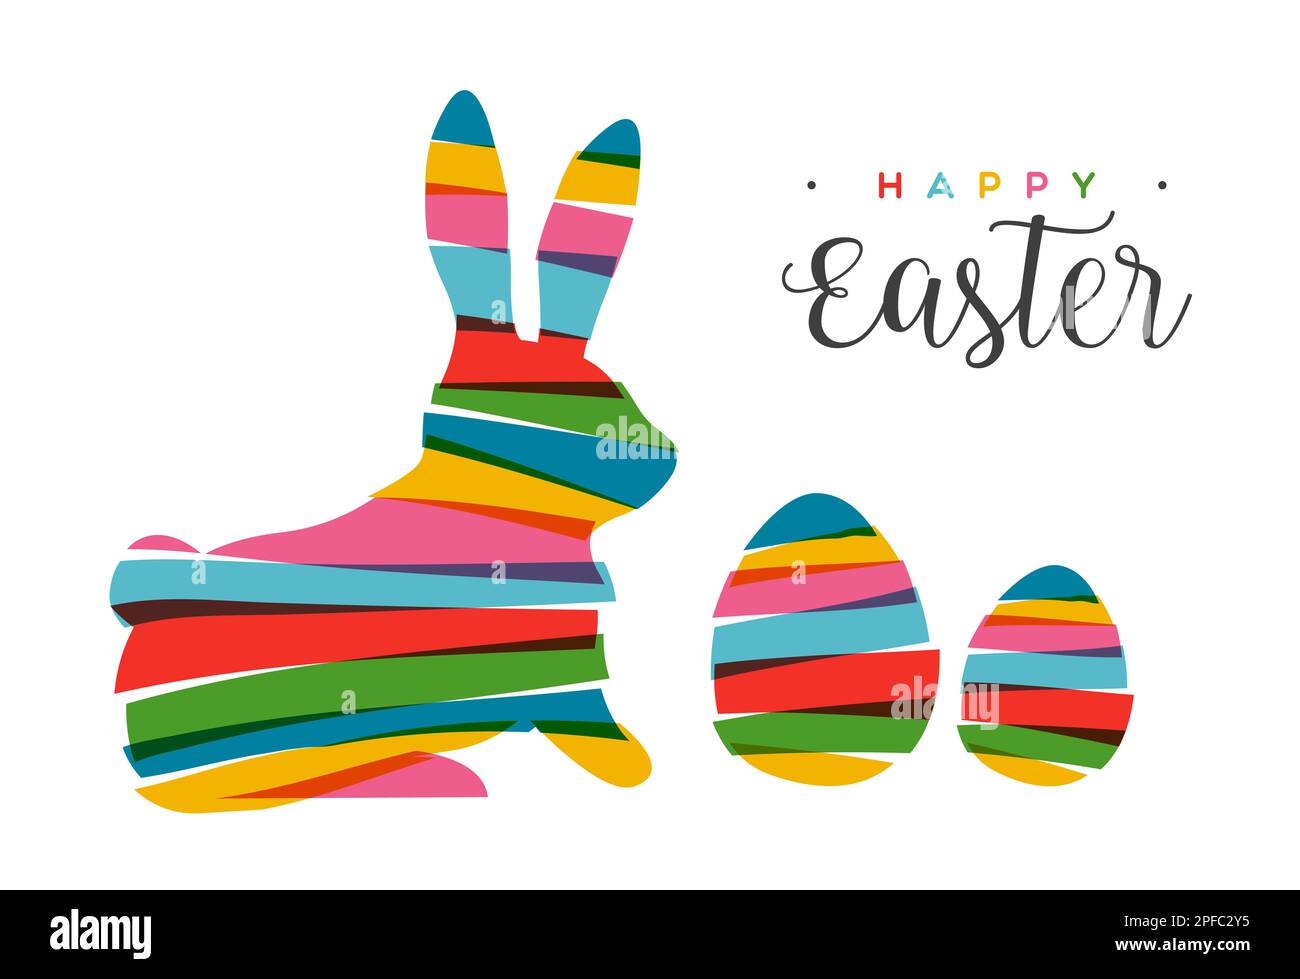 Coniglio e uovo di Pasqua in colori trasparenti e luminosi in stile collage. Design a strisce multicolore su sfondo isolato. Utilizzato per il biglietto d'auguri Illustrazione Vettoriale